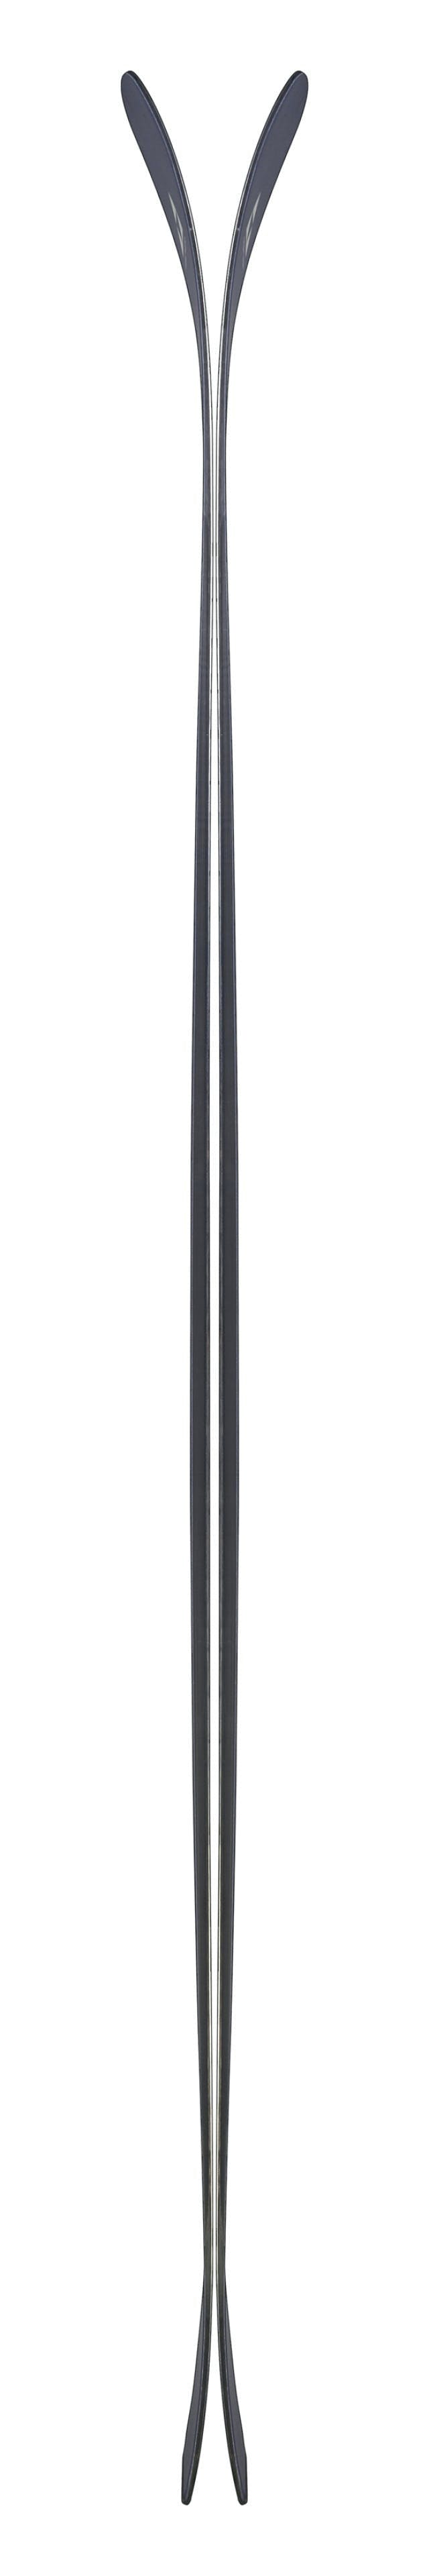 Fischer Ranger 96 Skis · 2024 · 173 cm